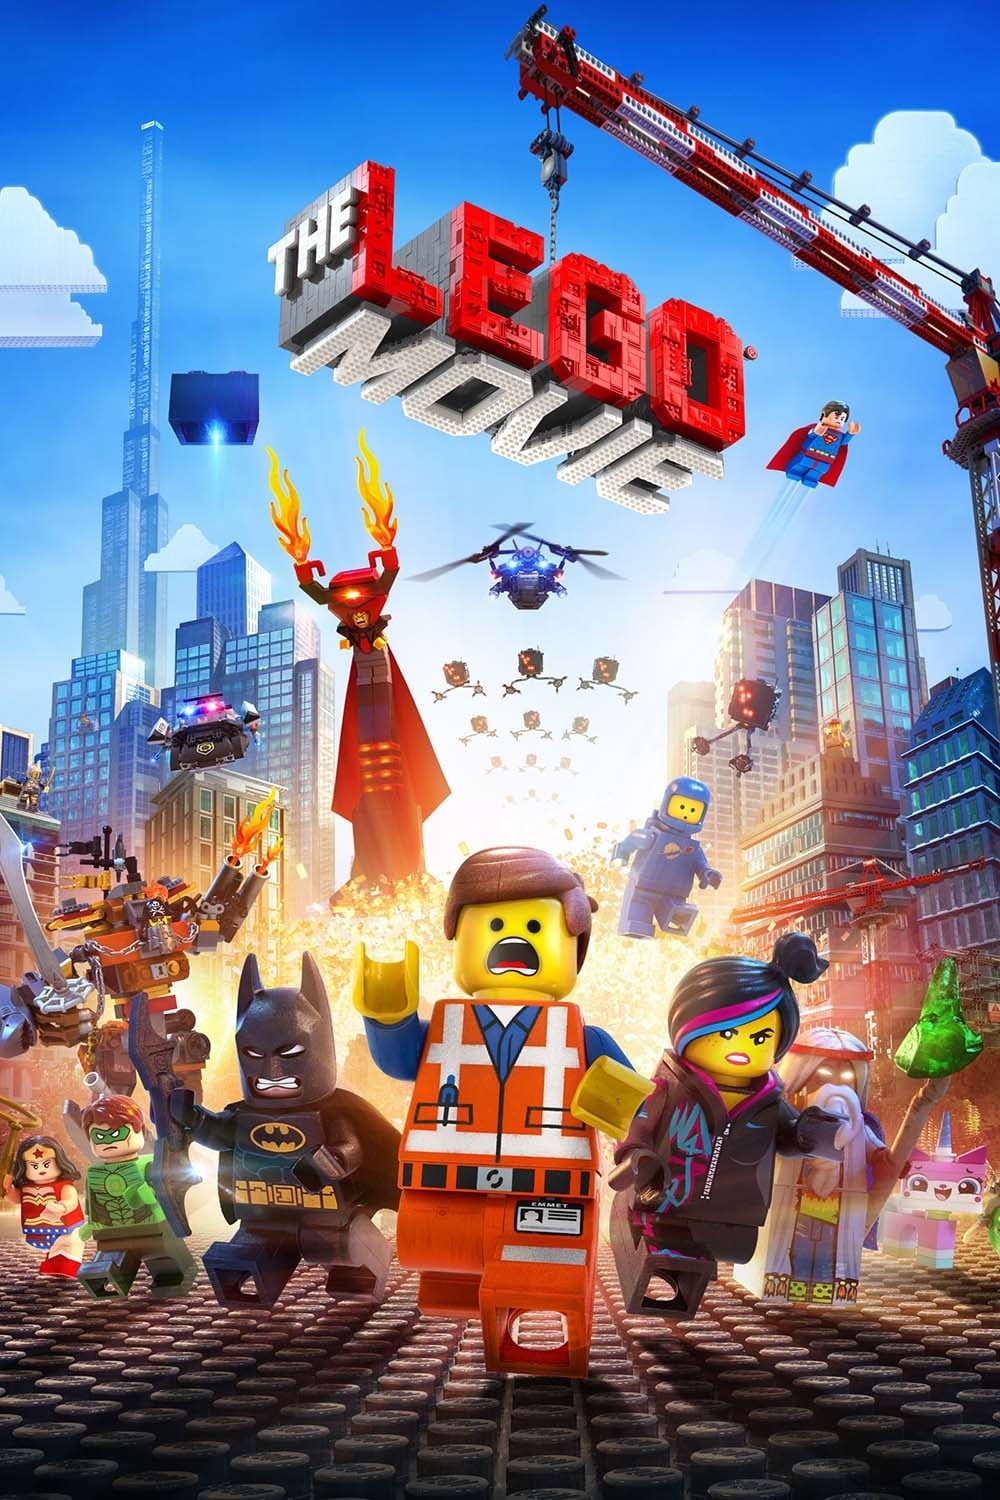 La LEGO película (2014)